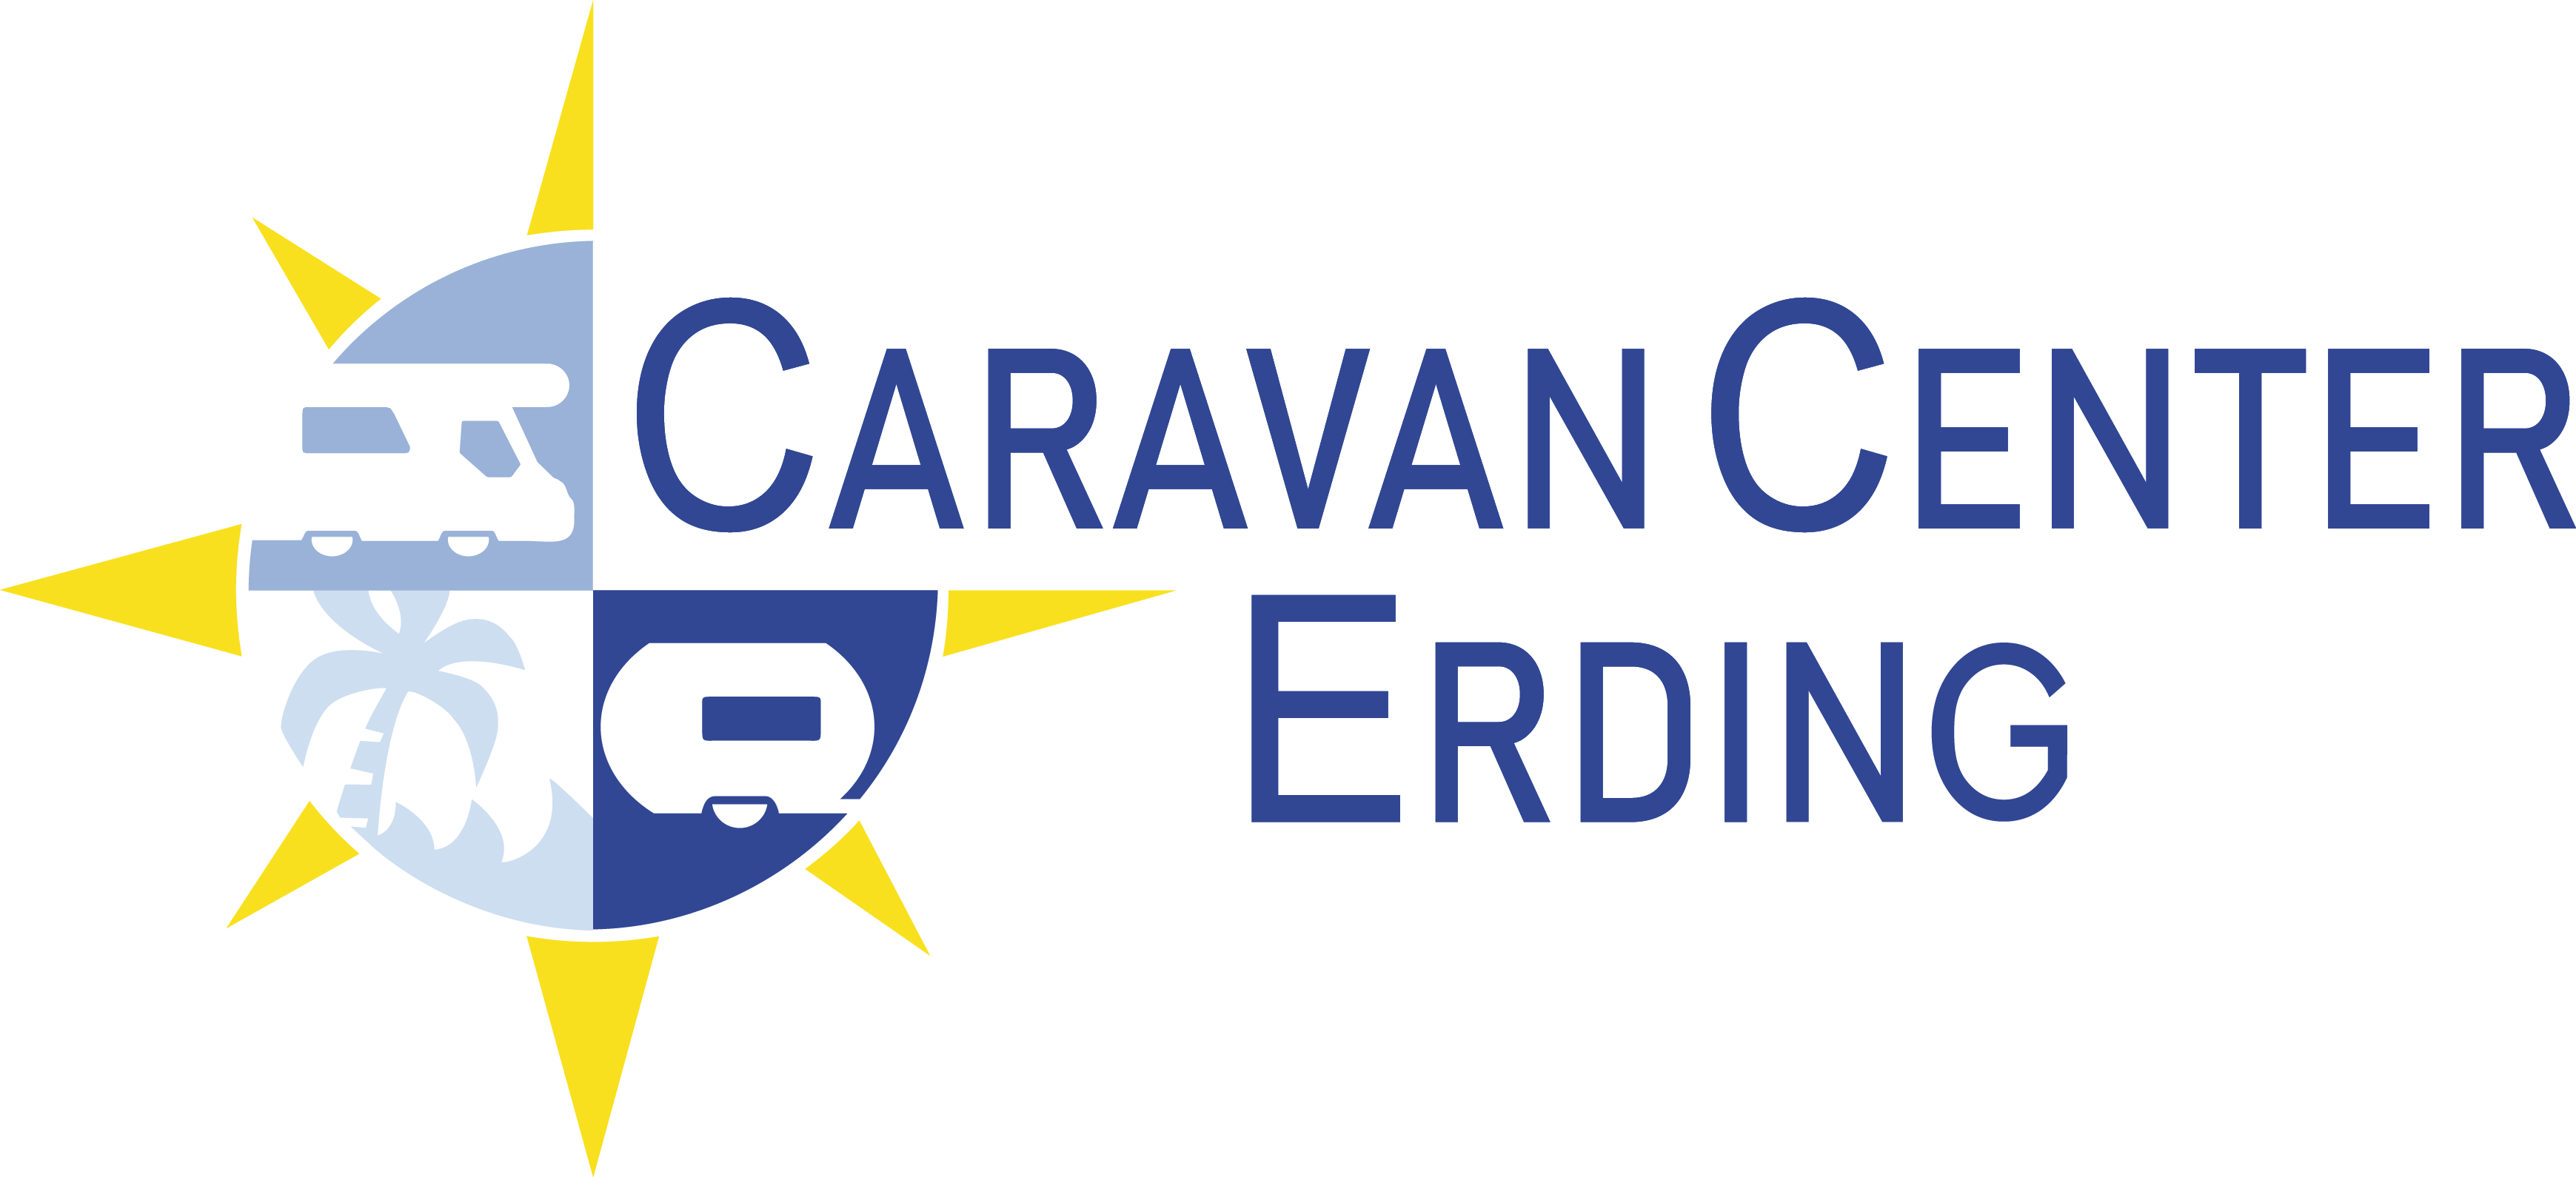 Caravan Center Erding